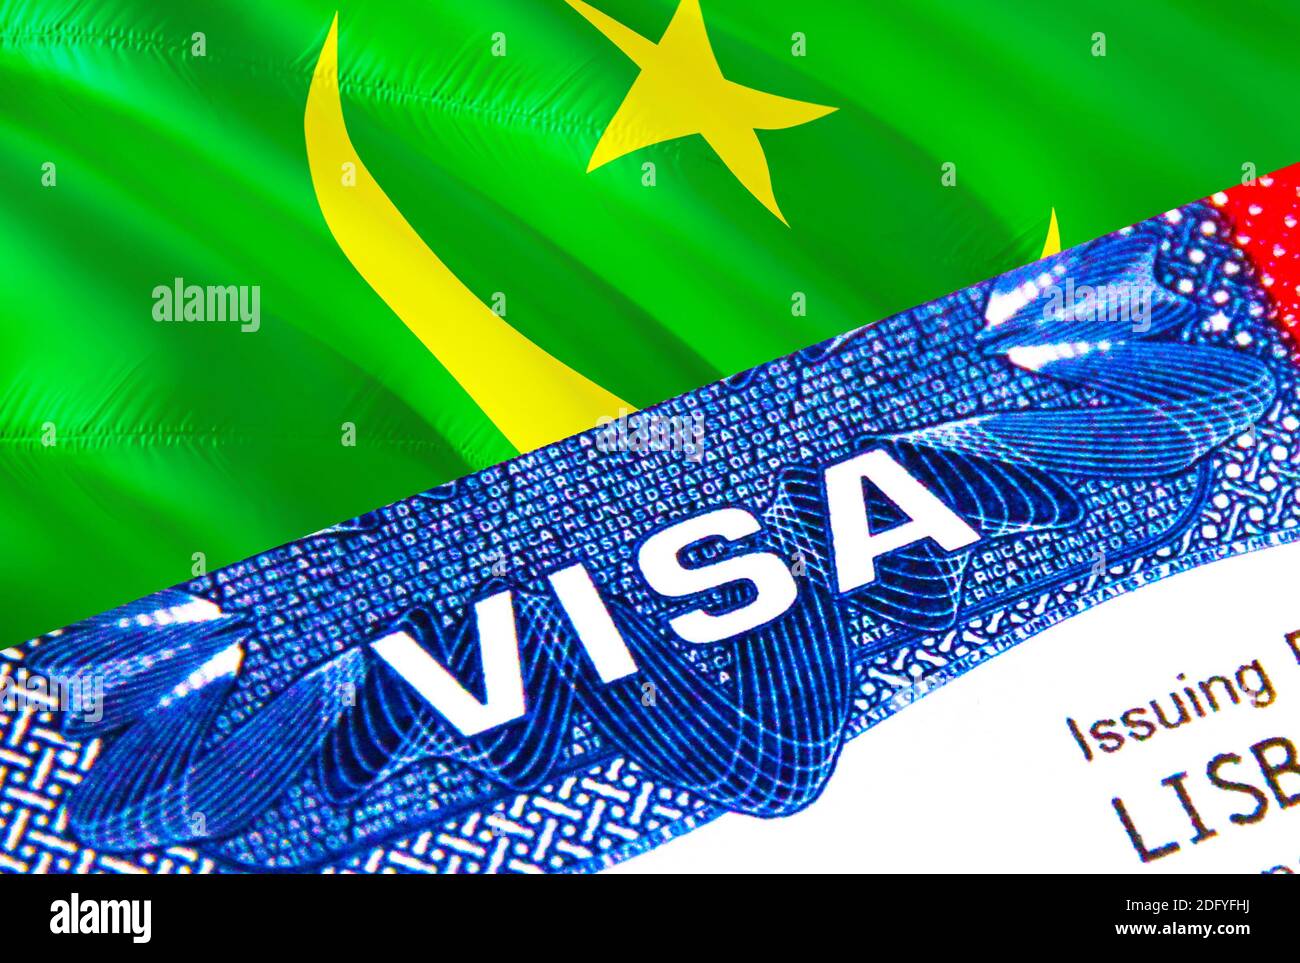 Mauritanie Visa en passeport. Visa d'immigration des États-Unis pour les  citoyens mauritaniens se concentrant sur le mot VISA. Voyage Mauritanie visa  dans identification nationale clo Photo Stock - Alamy